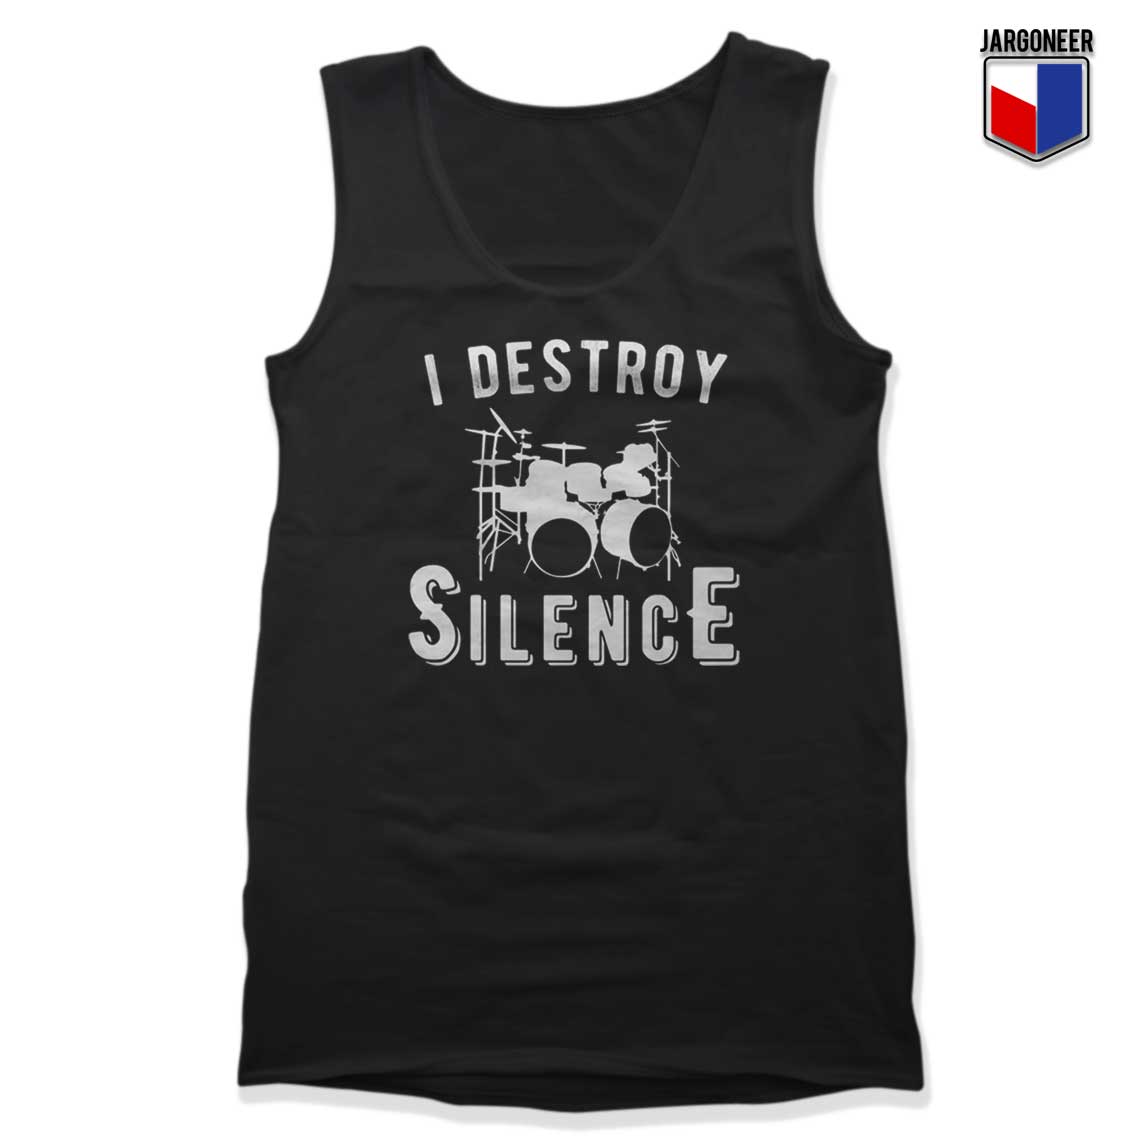 I Destroy Silence Tank Top - Shop Unique Graphic Cool Shirt Designs